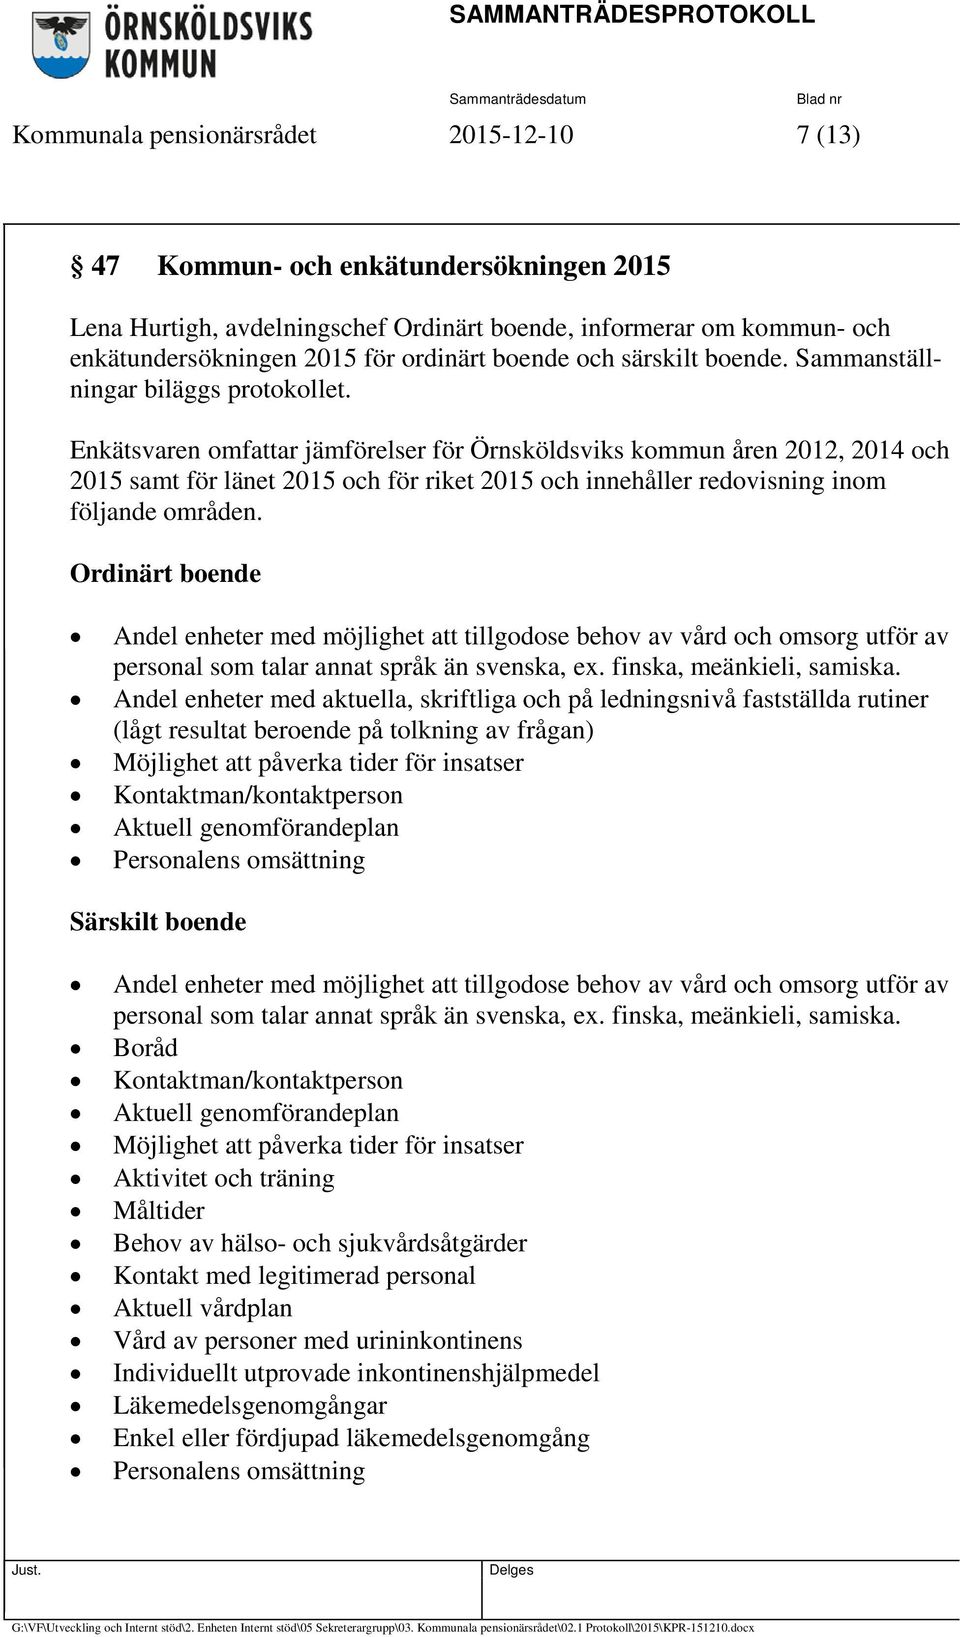 Enkätsvaren omfattar jämförelser för Örnsköldsviks kommun åren 2012, 2014 och 2015 samt för länet 2015 och för riket 2015 och innehåller redovisning inom följande områden.